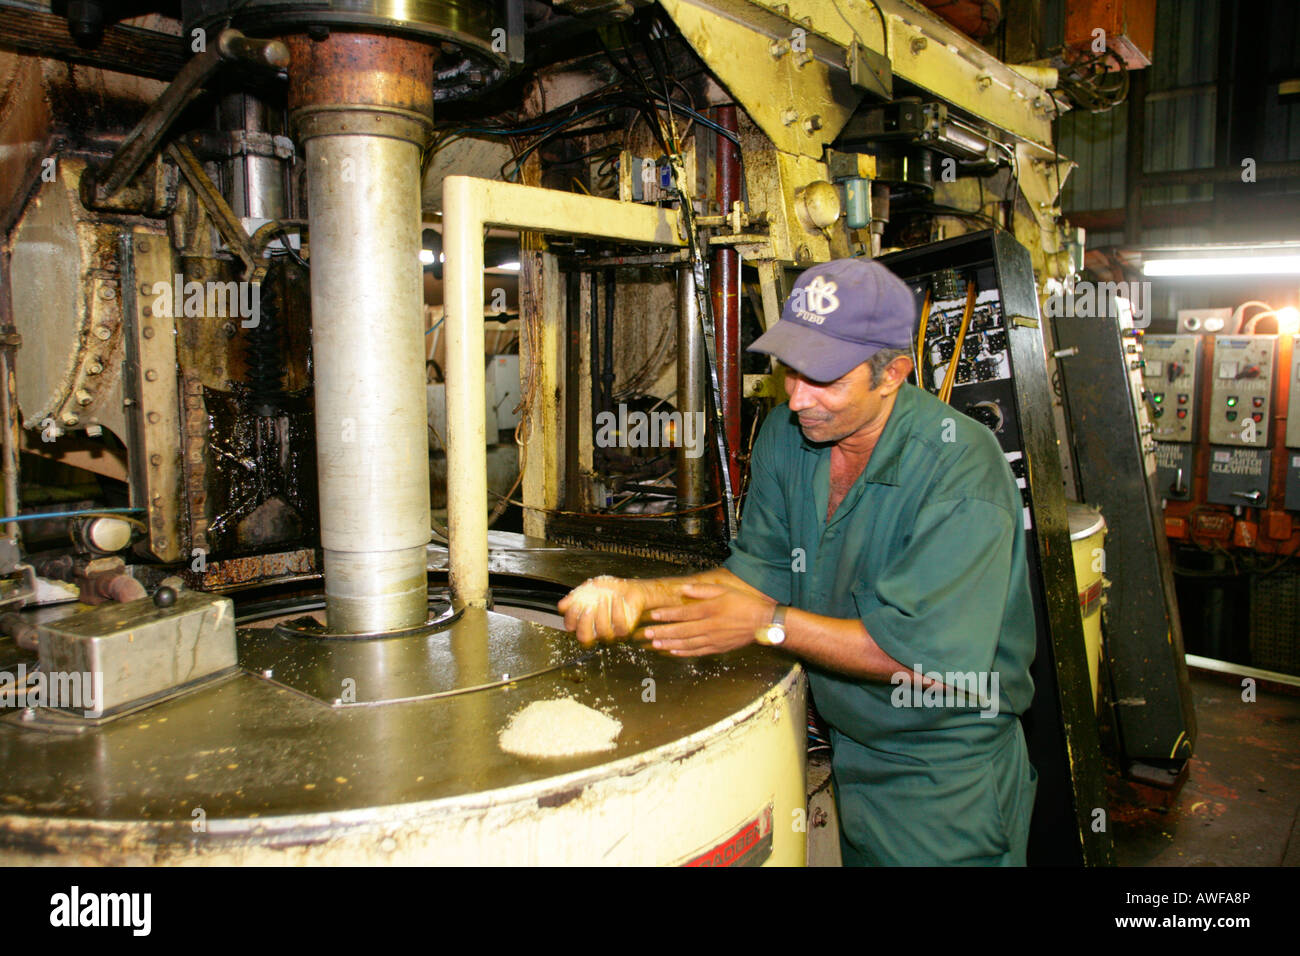 Arbeiter, die Überprüfung von Zucker, Produktion von "Demerara Zucker" aus Zuckerrohr, Demerara Provinz, Guyana, Südamerika Stockfoto